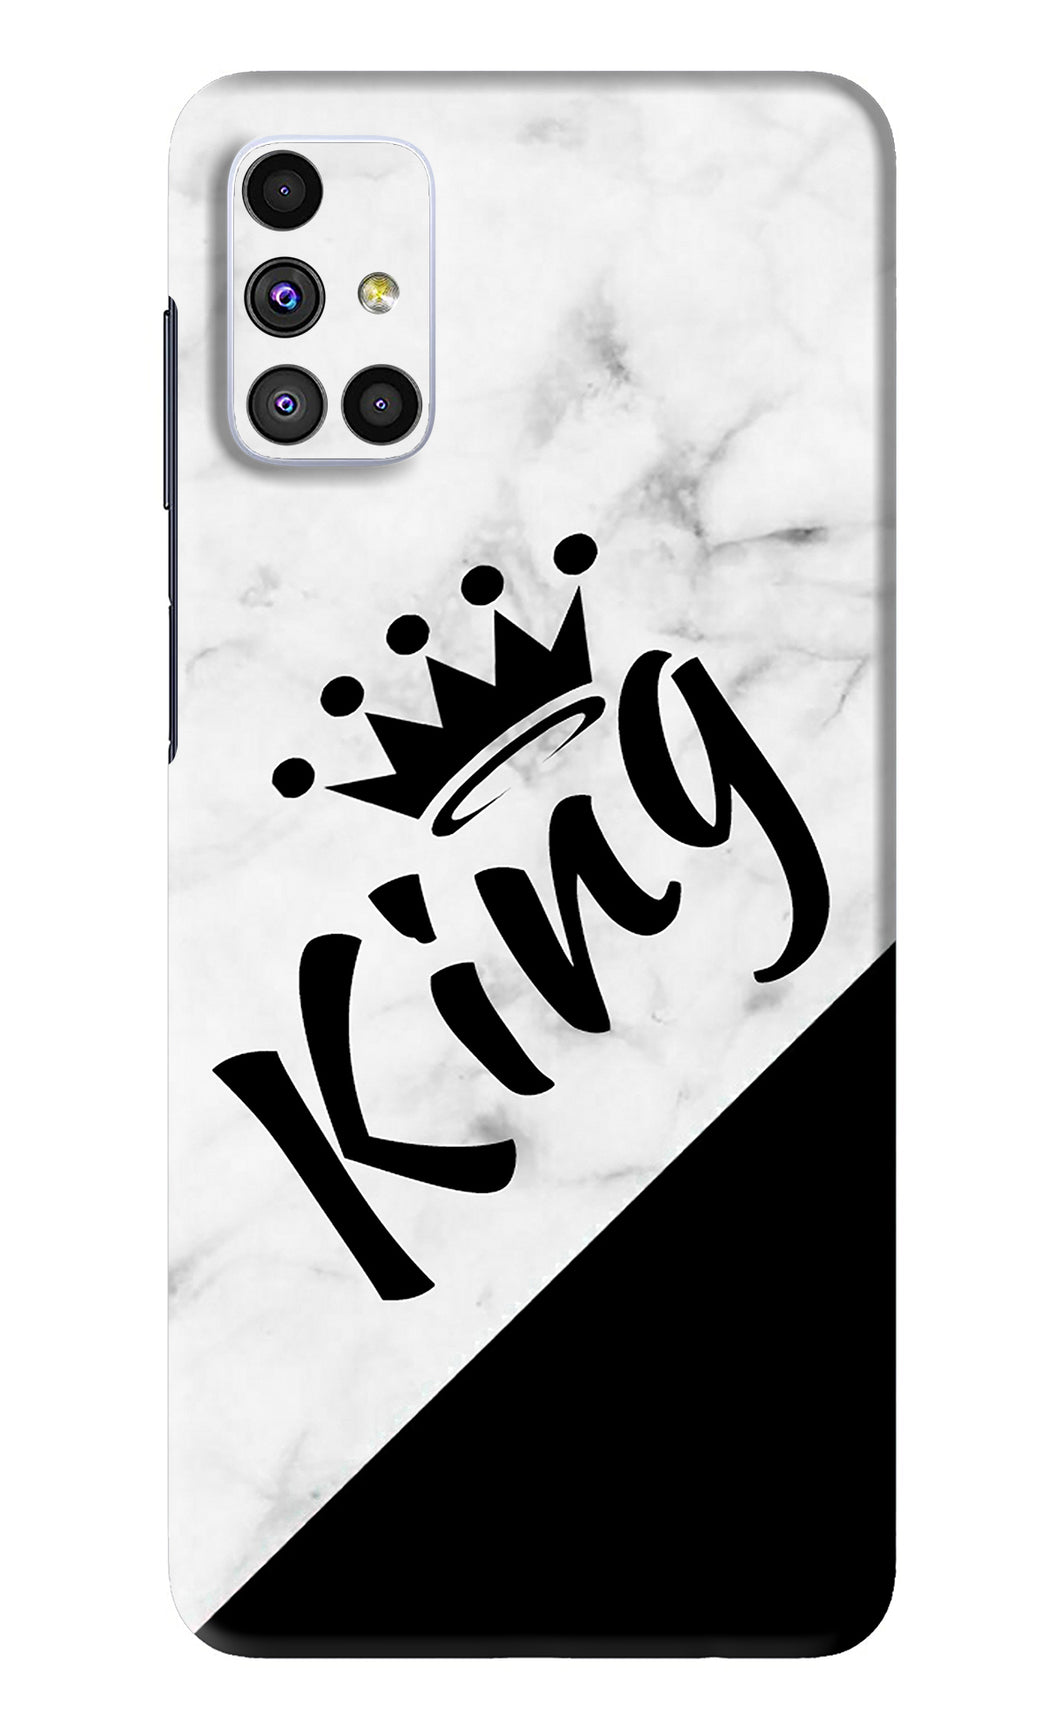 King Samsung Galaxy M51 Back Skin Wrap